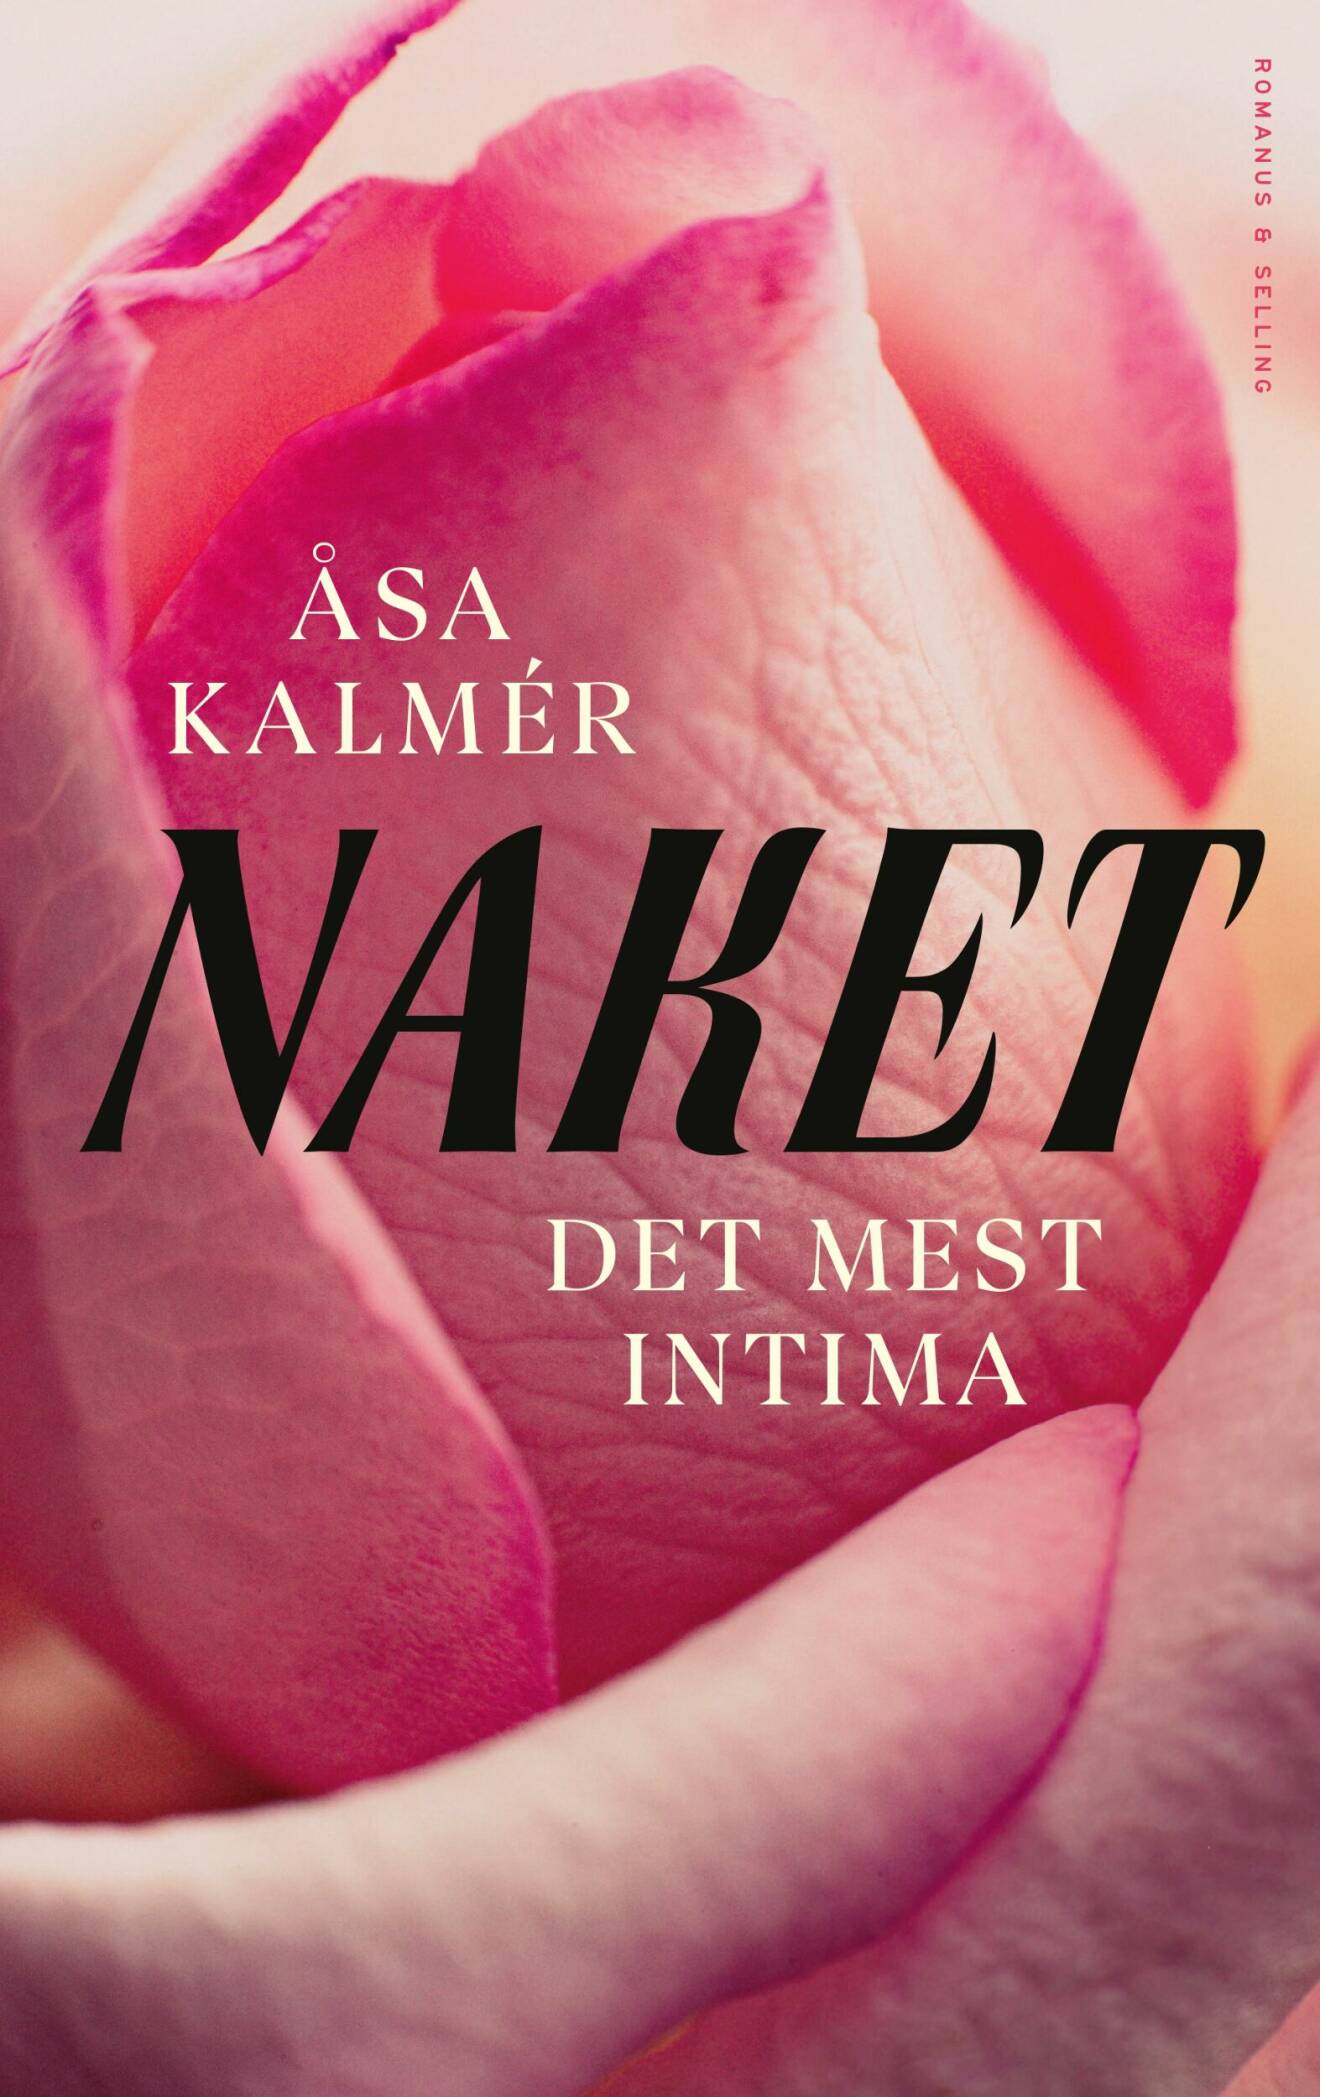 Åsa Kalmer